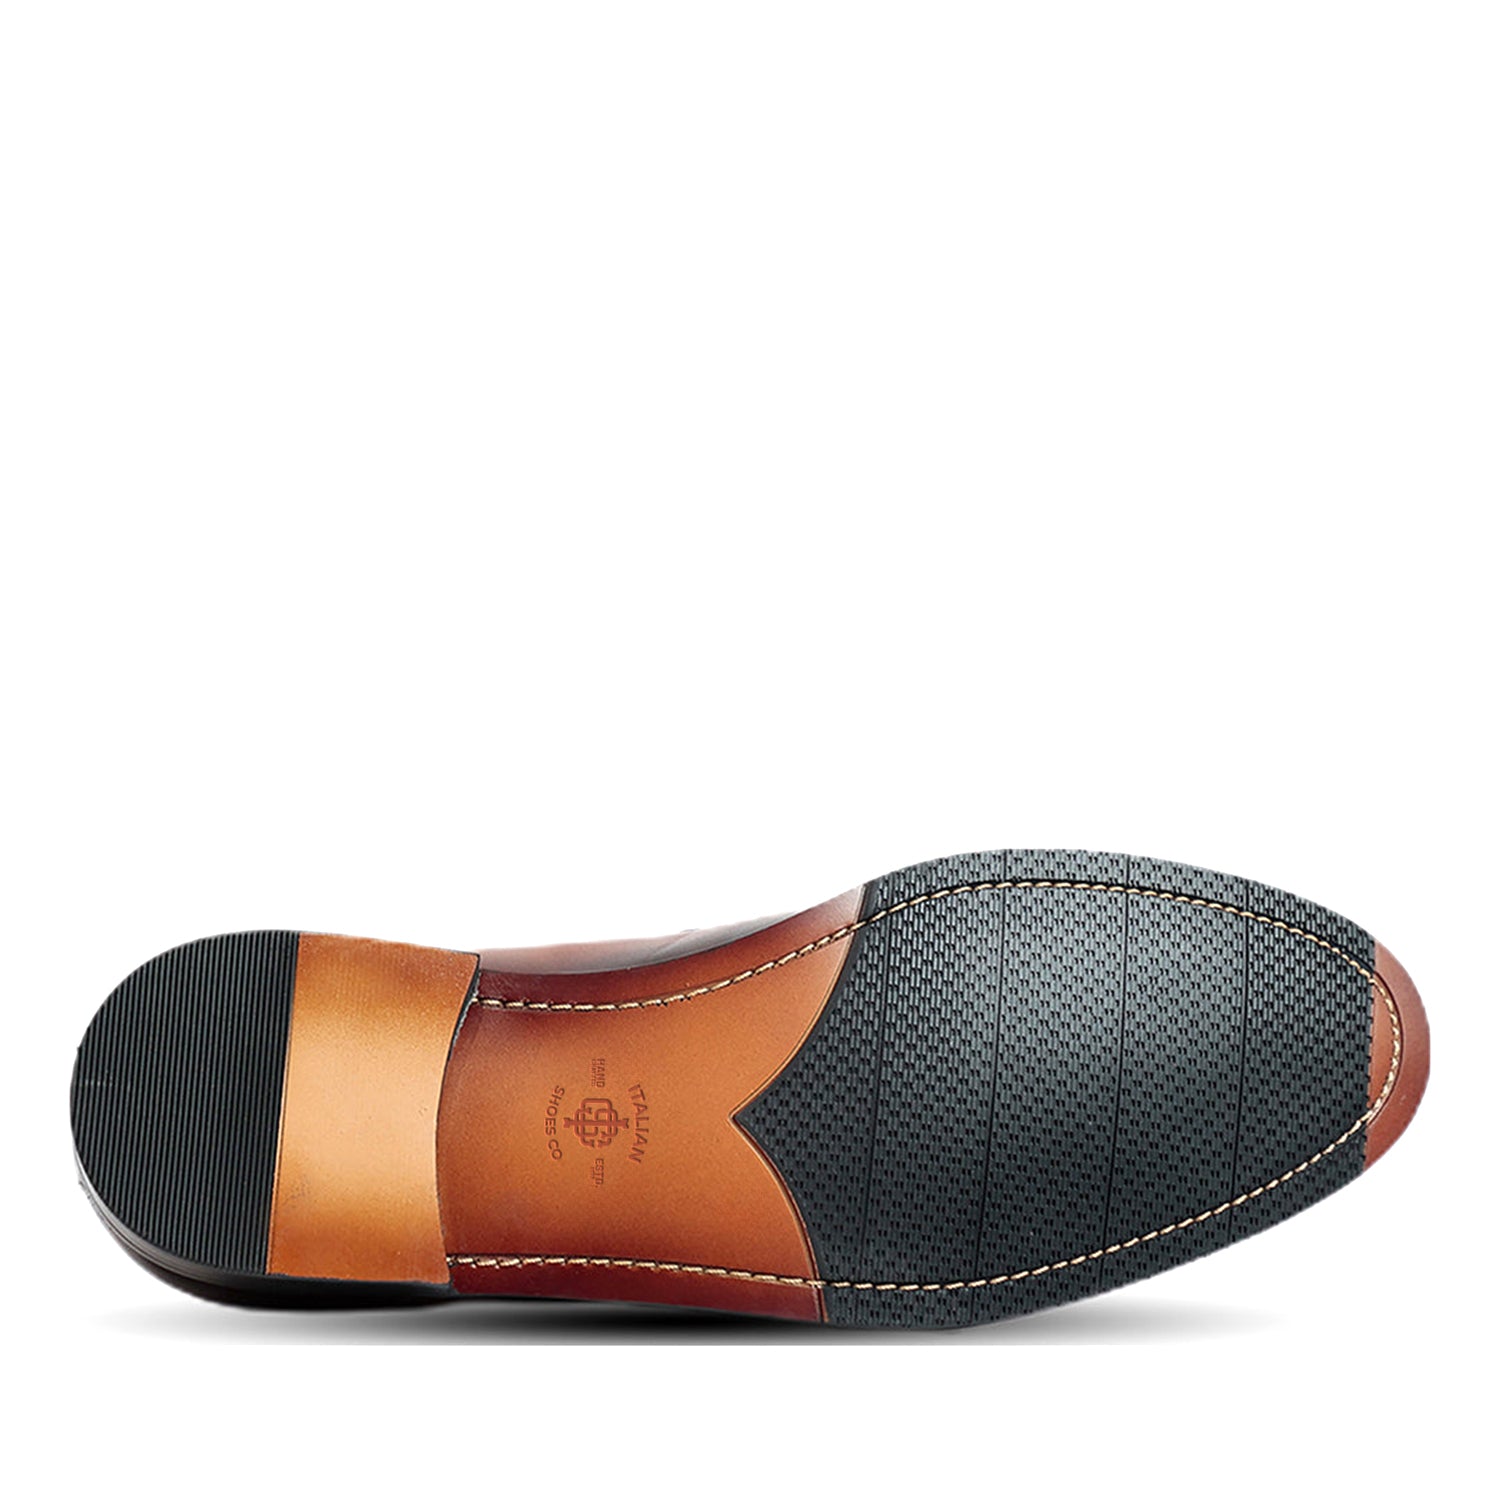 Selton Black Loafer Shoes